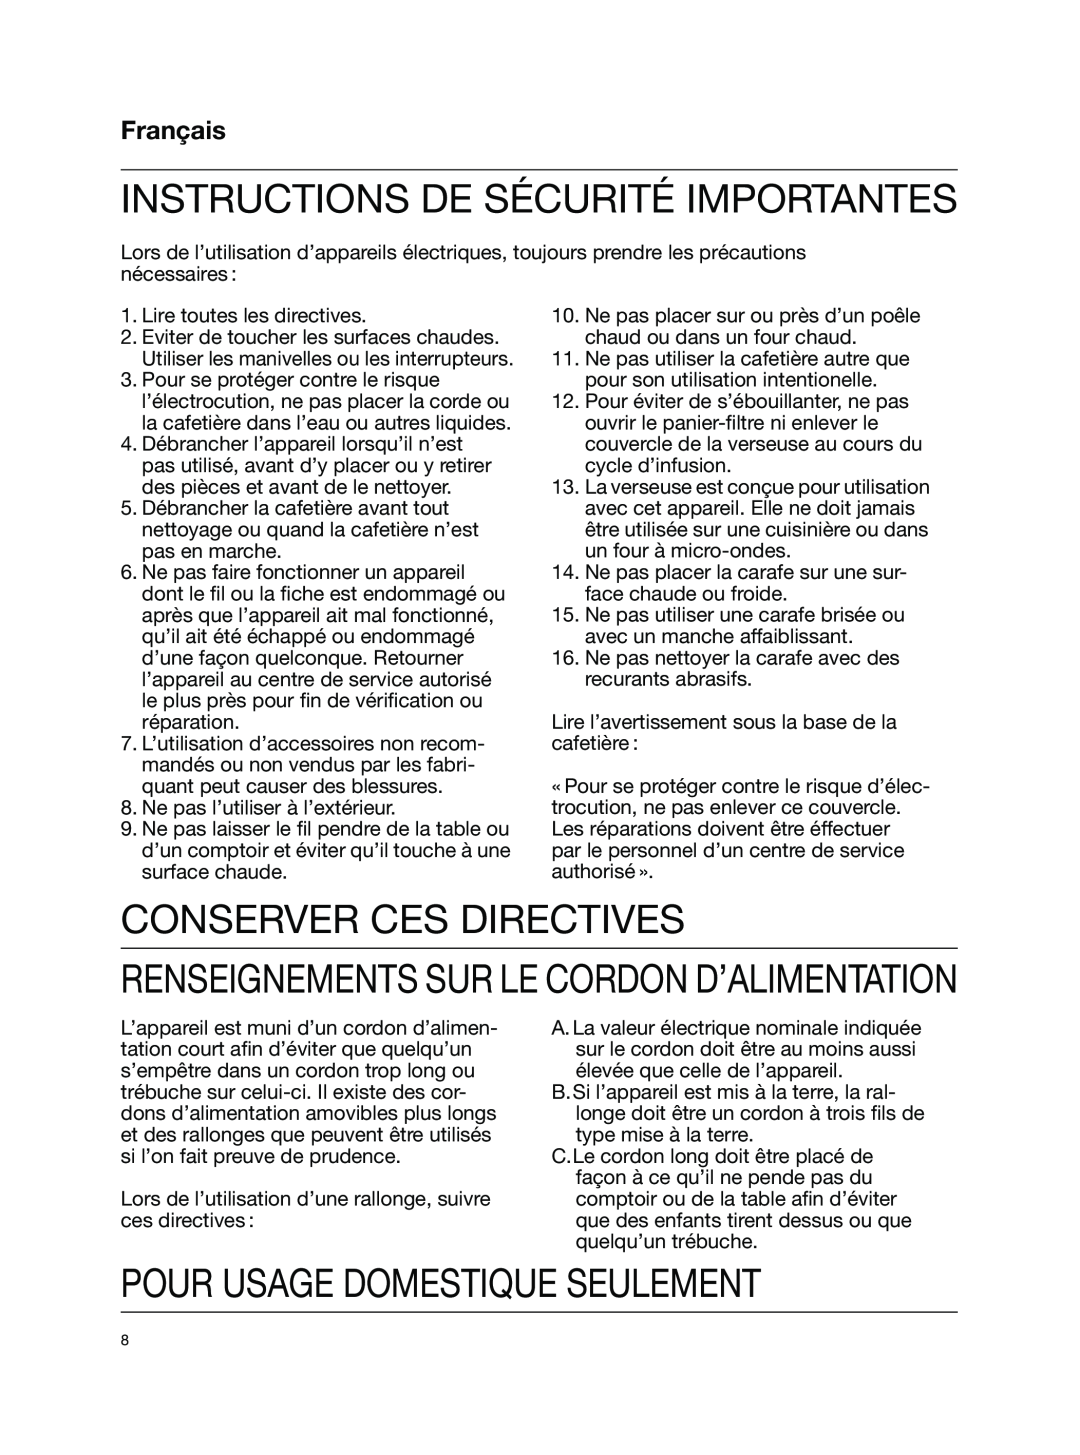 Braun KF510 Conserver Ces Directives, Pour Usage Domestique Seulement, Français, Instructions De Sécurité Importantes 